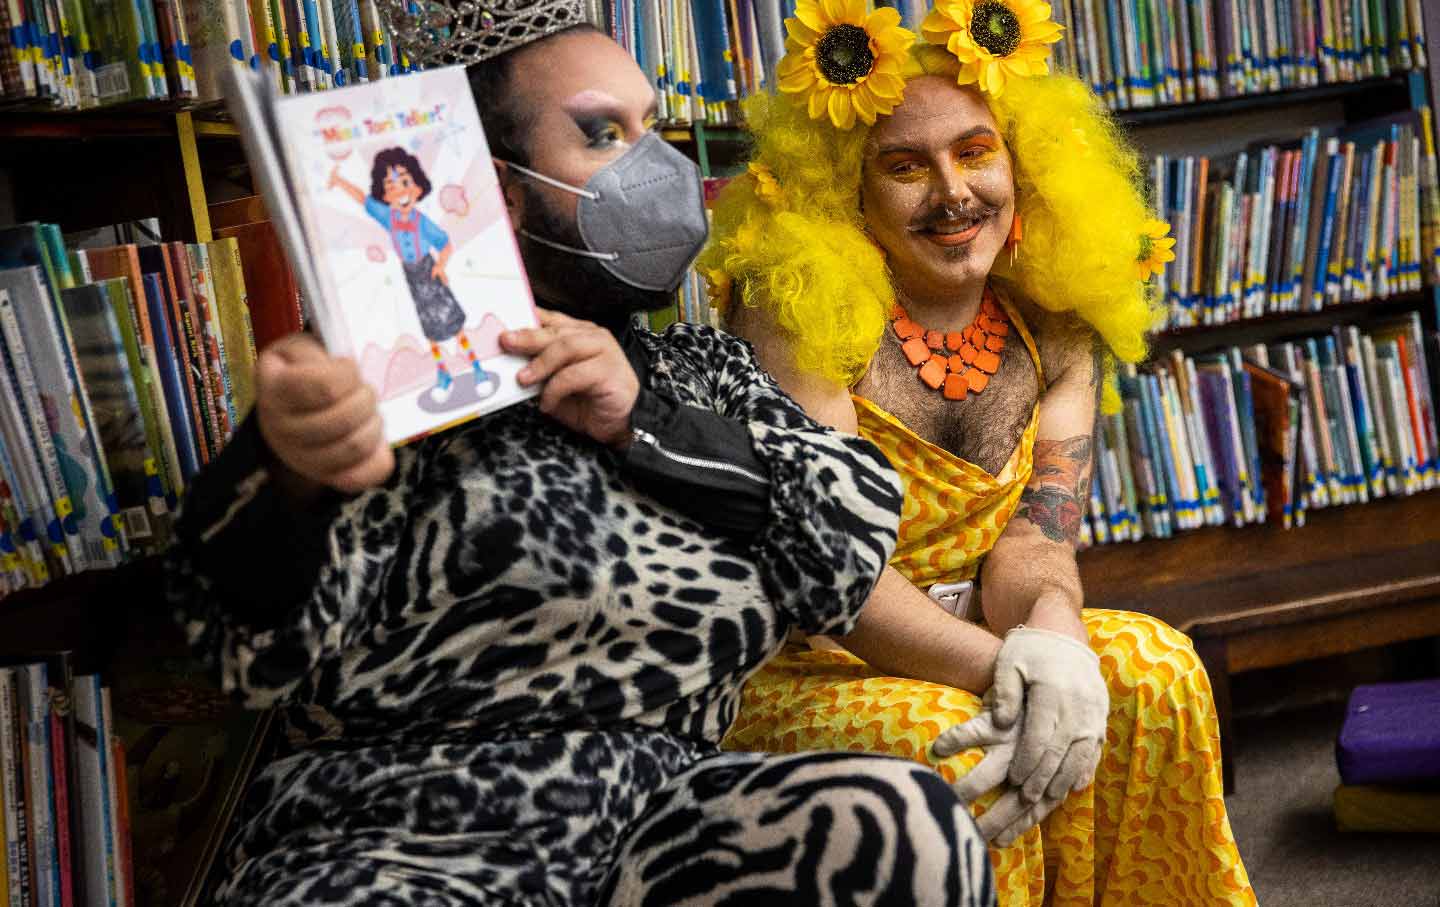 Drag queens read stories to children